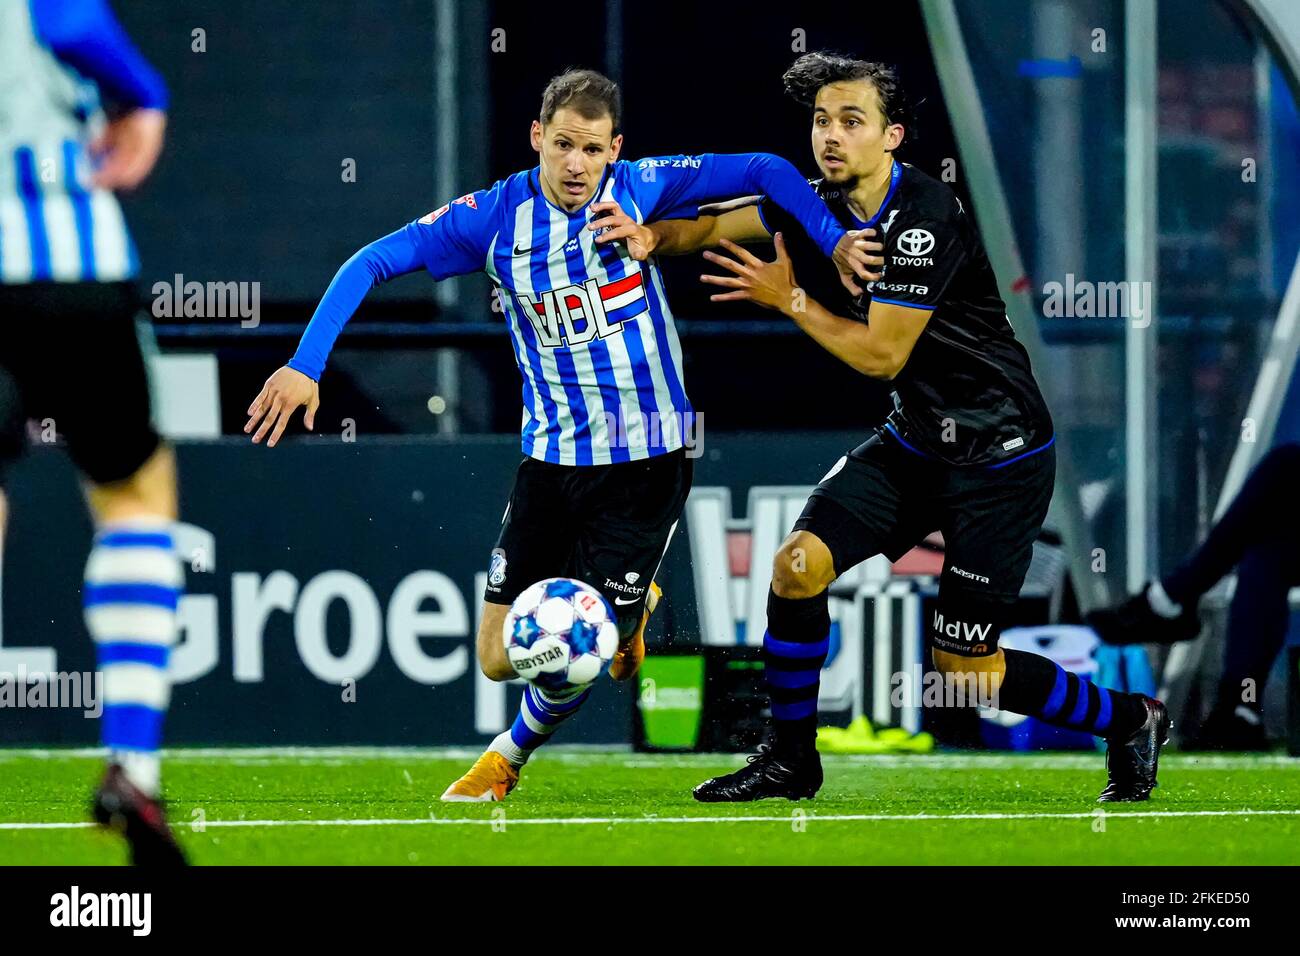 EINDHOVEN, NETHERLANDS - APRIL 30: Joey Sleegers of FC Eindhoven, Mats Deijl of FC Den Bosch during the Keuken kampioen divisie 2020-201 match between Stock Photo